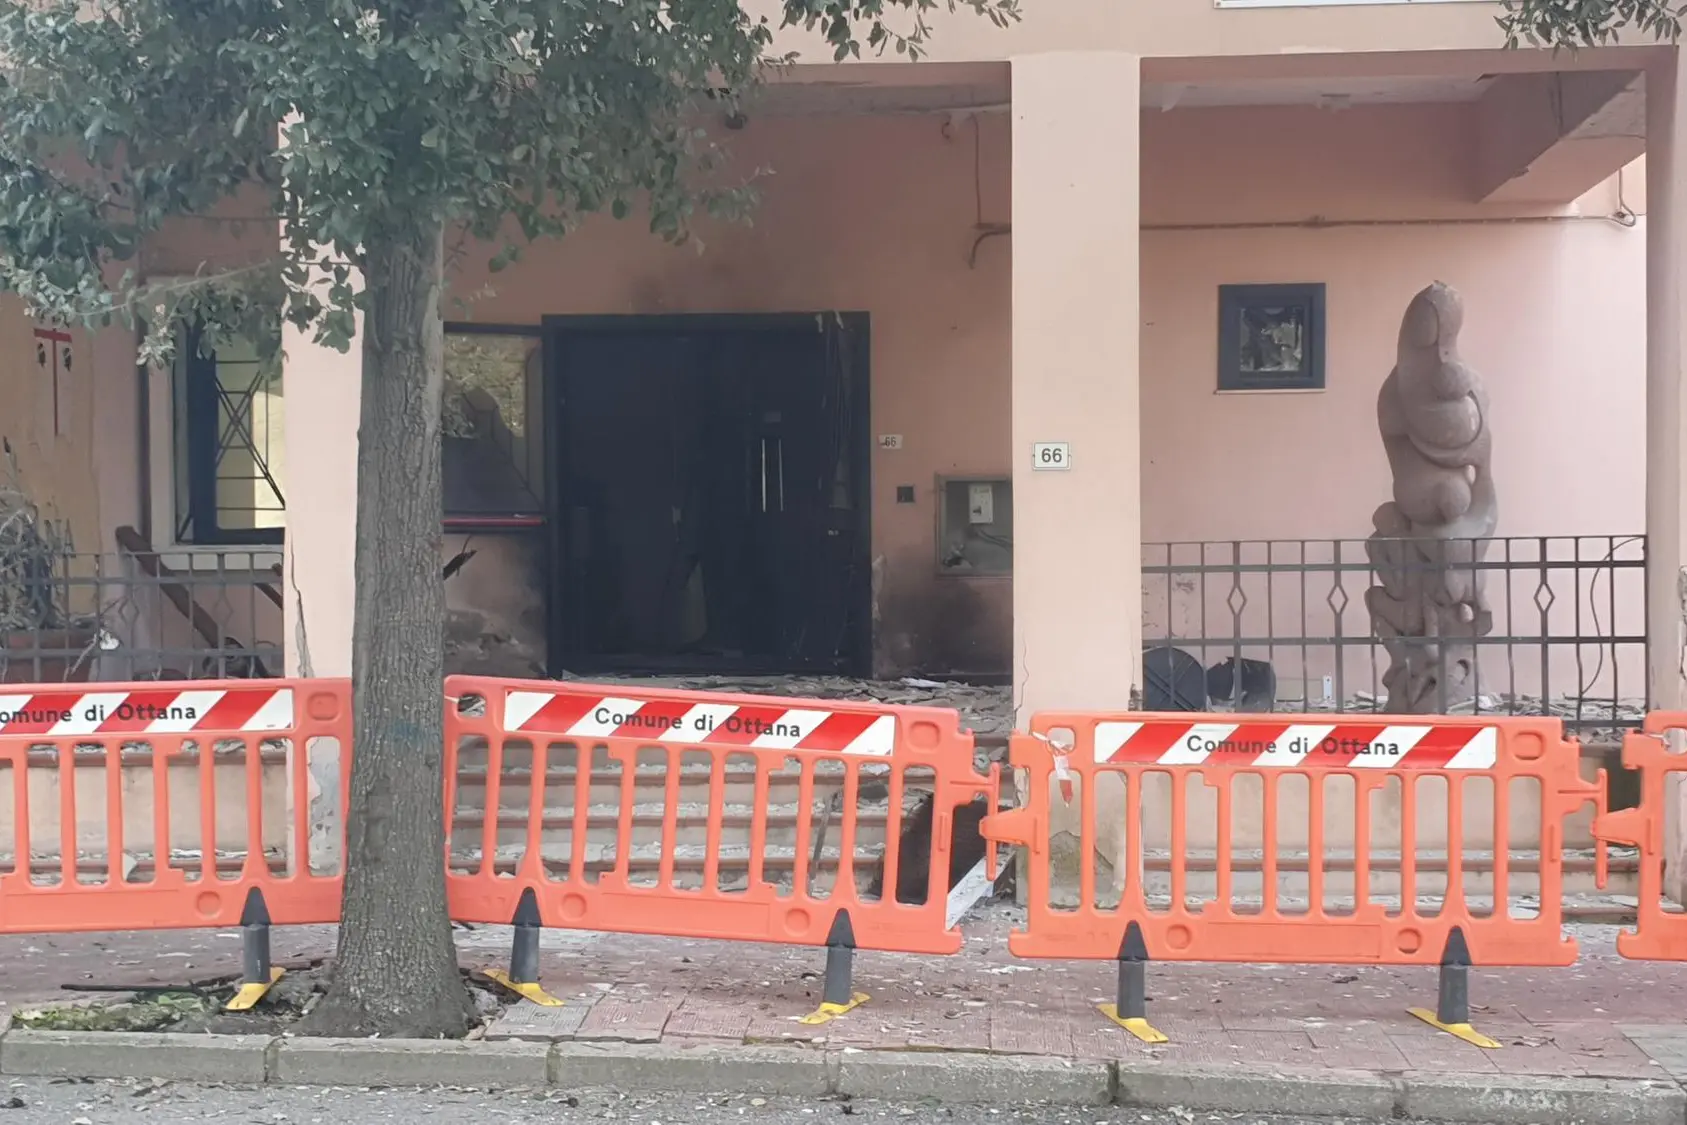 Дверь здания была выпотрошена бомбой